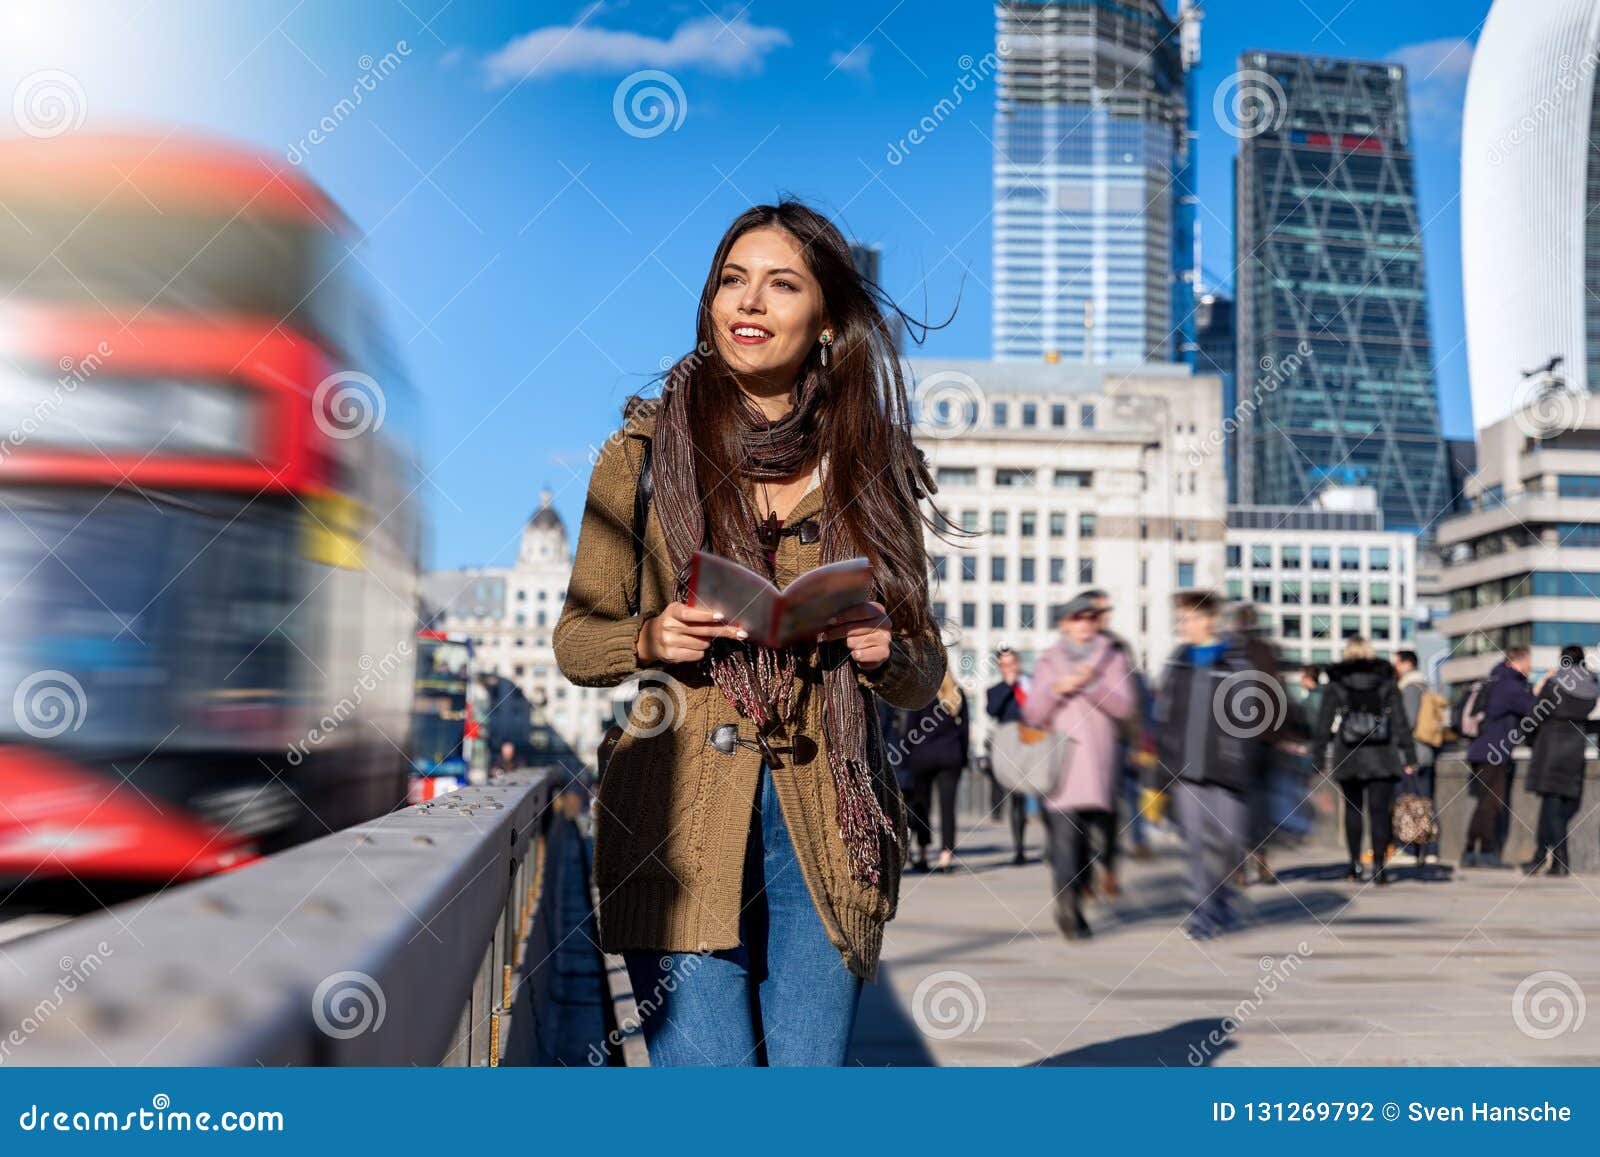 woman walking tour london